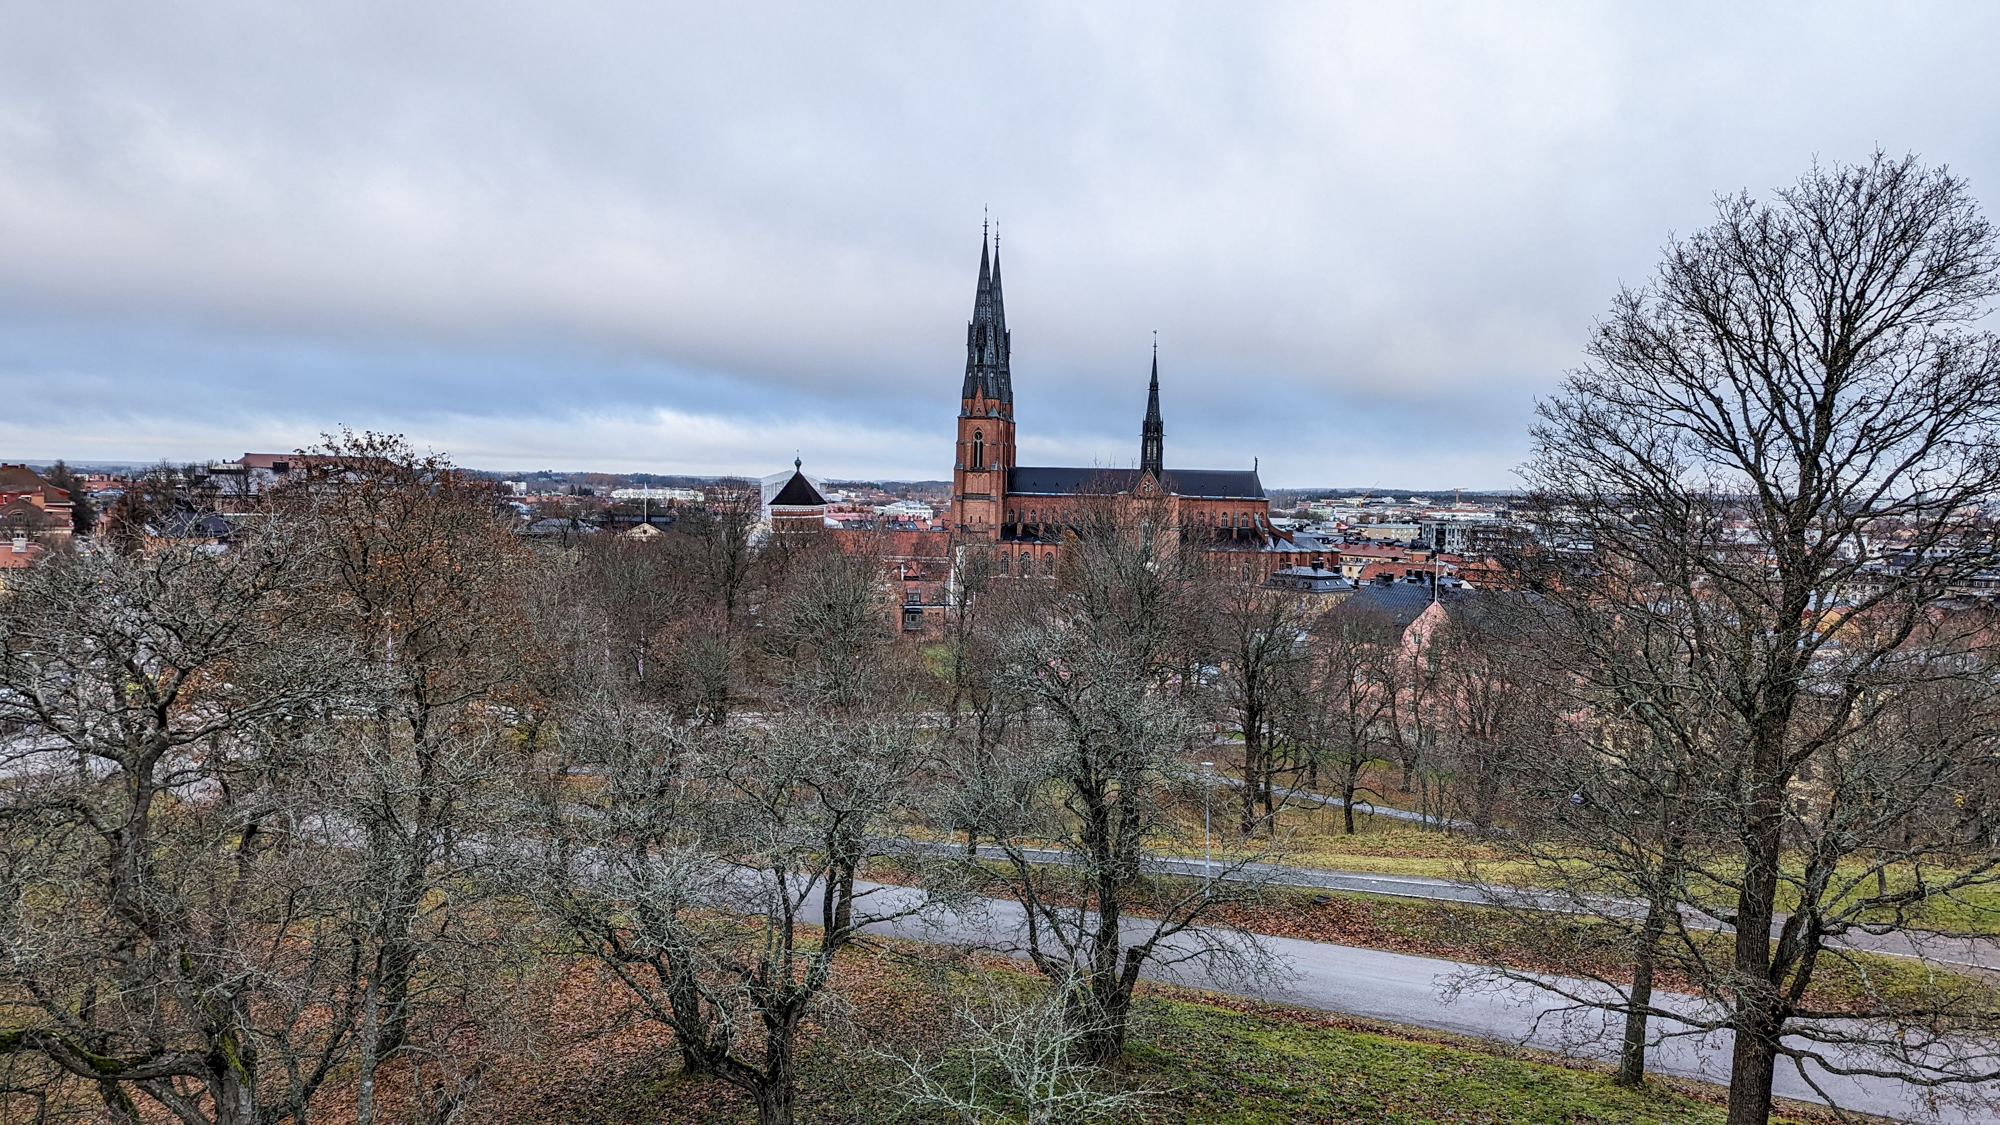 Uppsalla má približne 177 tisíc obyvateľov a je jedno z nastarších švédskych miest.